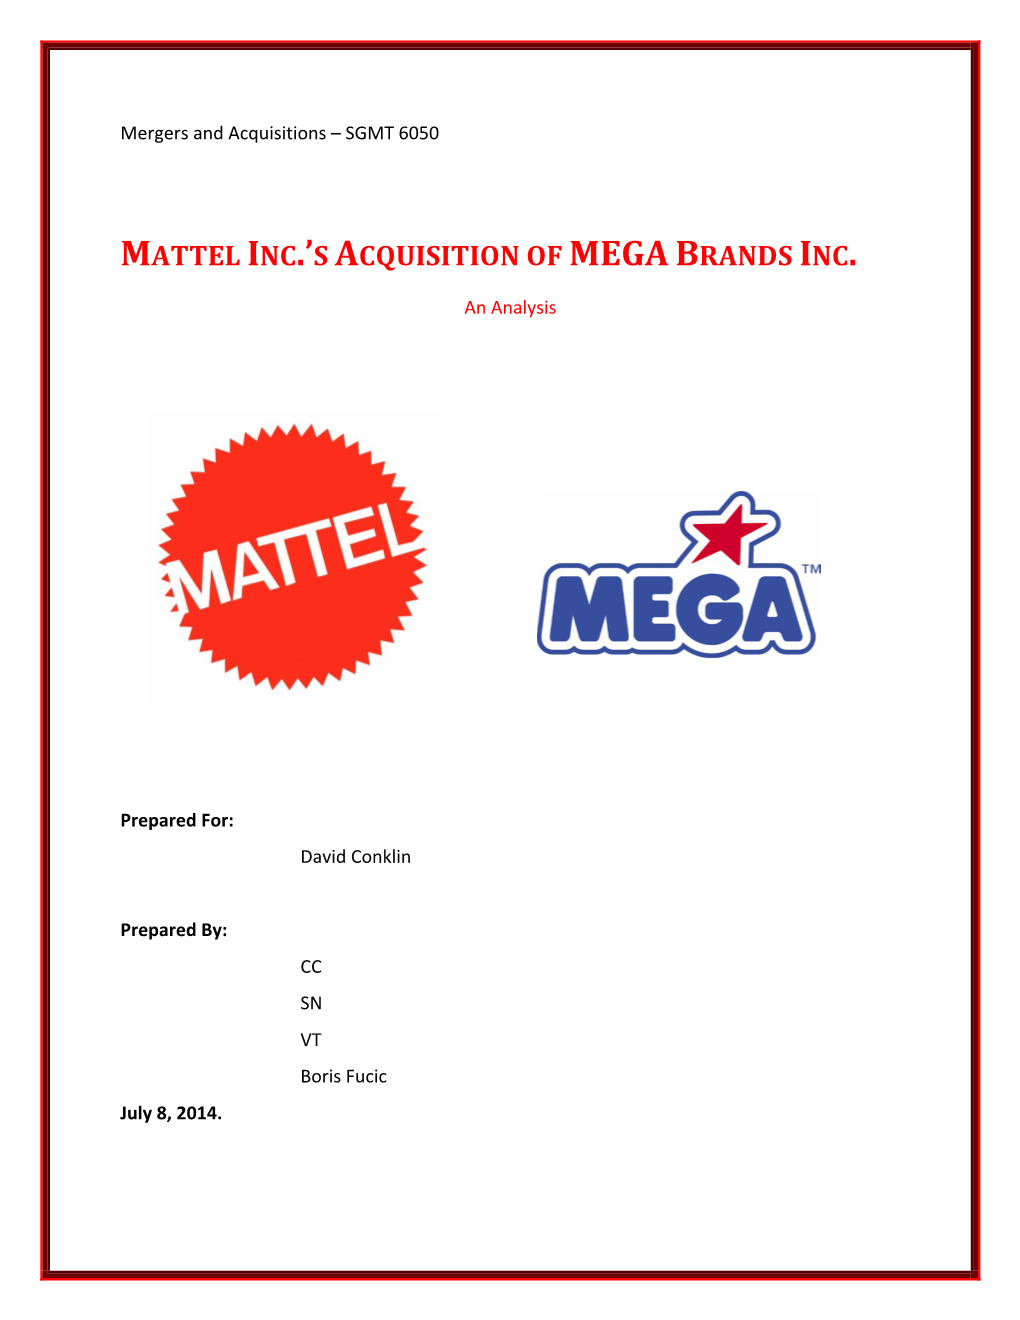 Mattel Inc.'S Acquisition of Mega Brands Inc